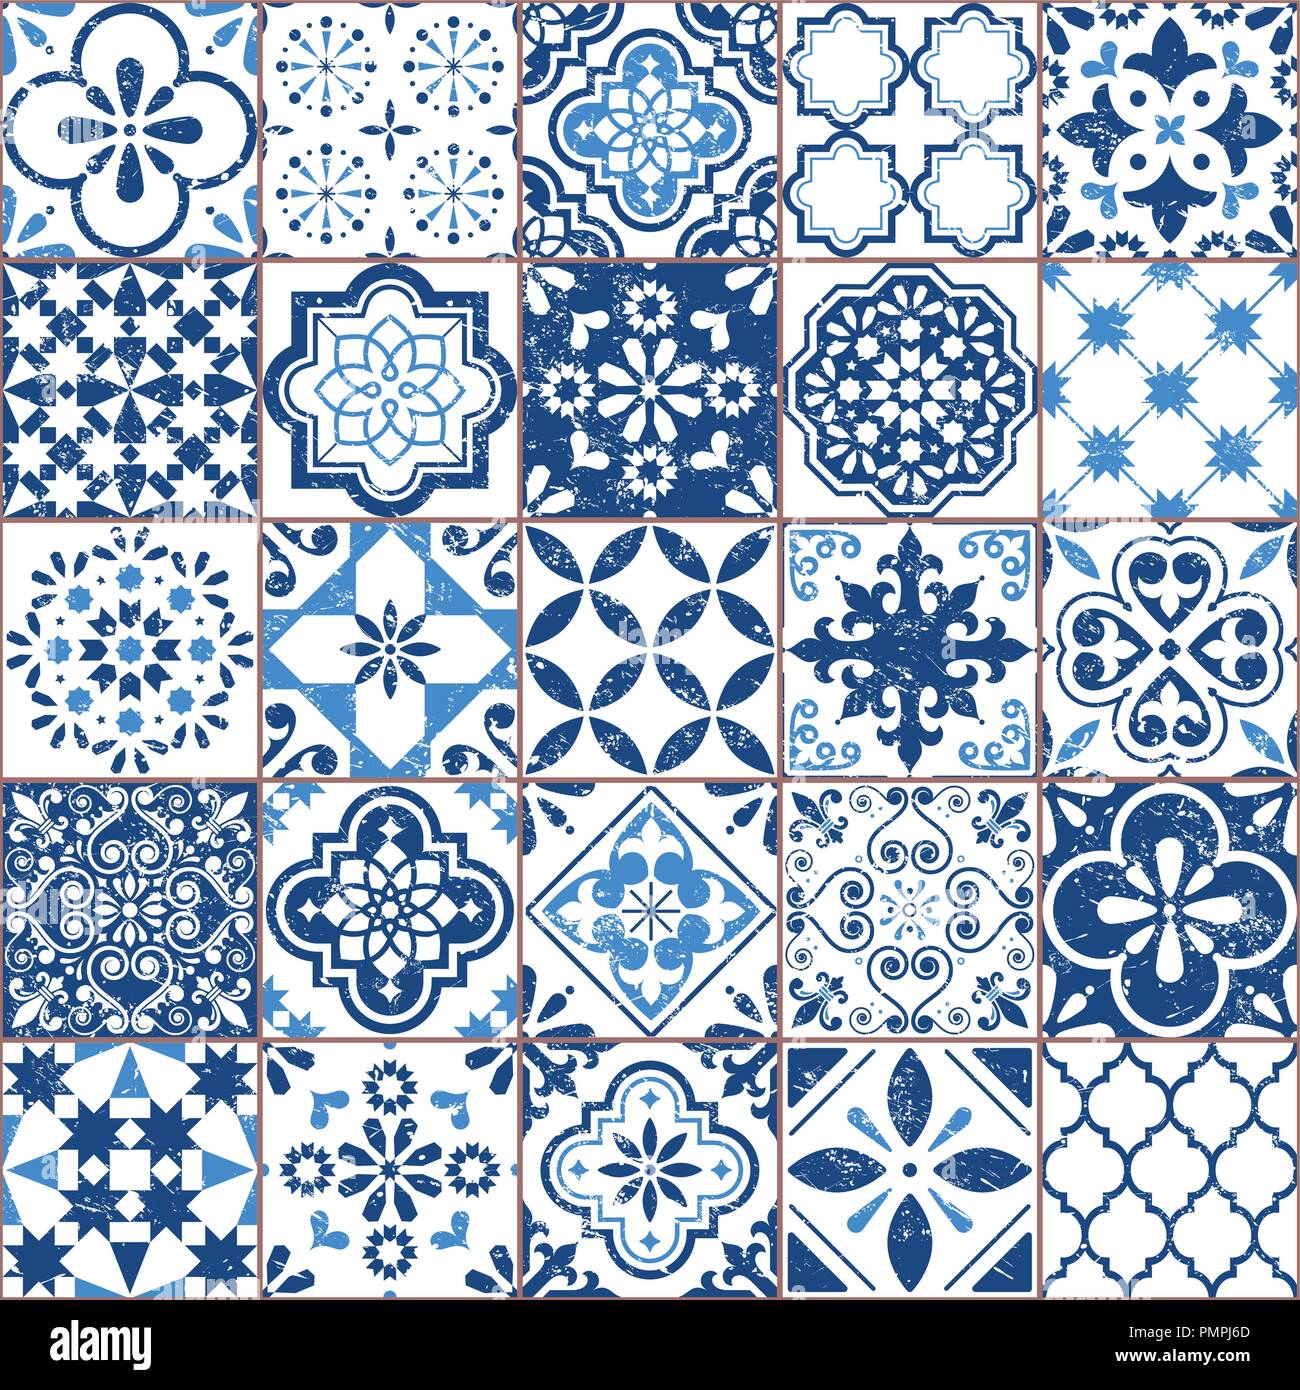 Vektor Azulejo Kacheln Muster, Portugiesisch oder Spanisch retro alte Fliesen Mosaik, mediterranen Nahtlose navy blue Design Stock Vektor